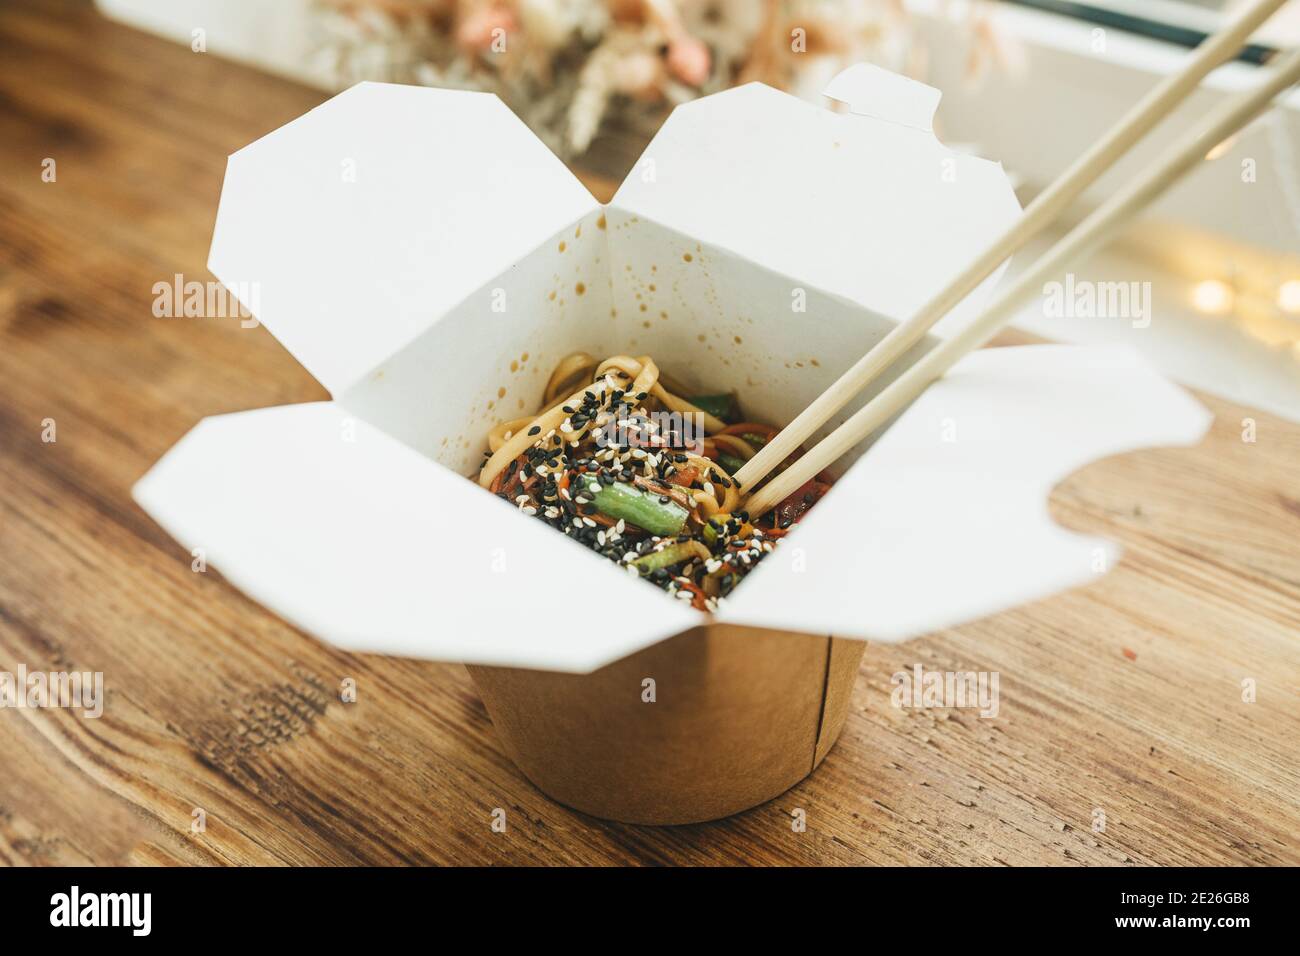 Nahaufnahme asiatischer Speisen - Nudeln in einer Schachtel. Essen zum Mitnehmen. Stockfoto